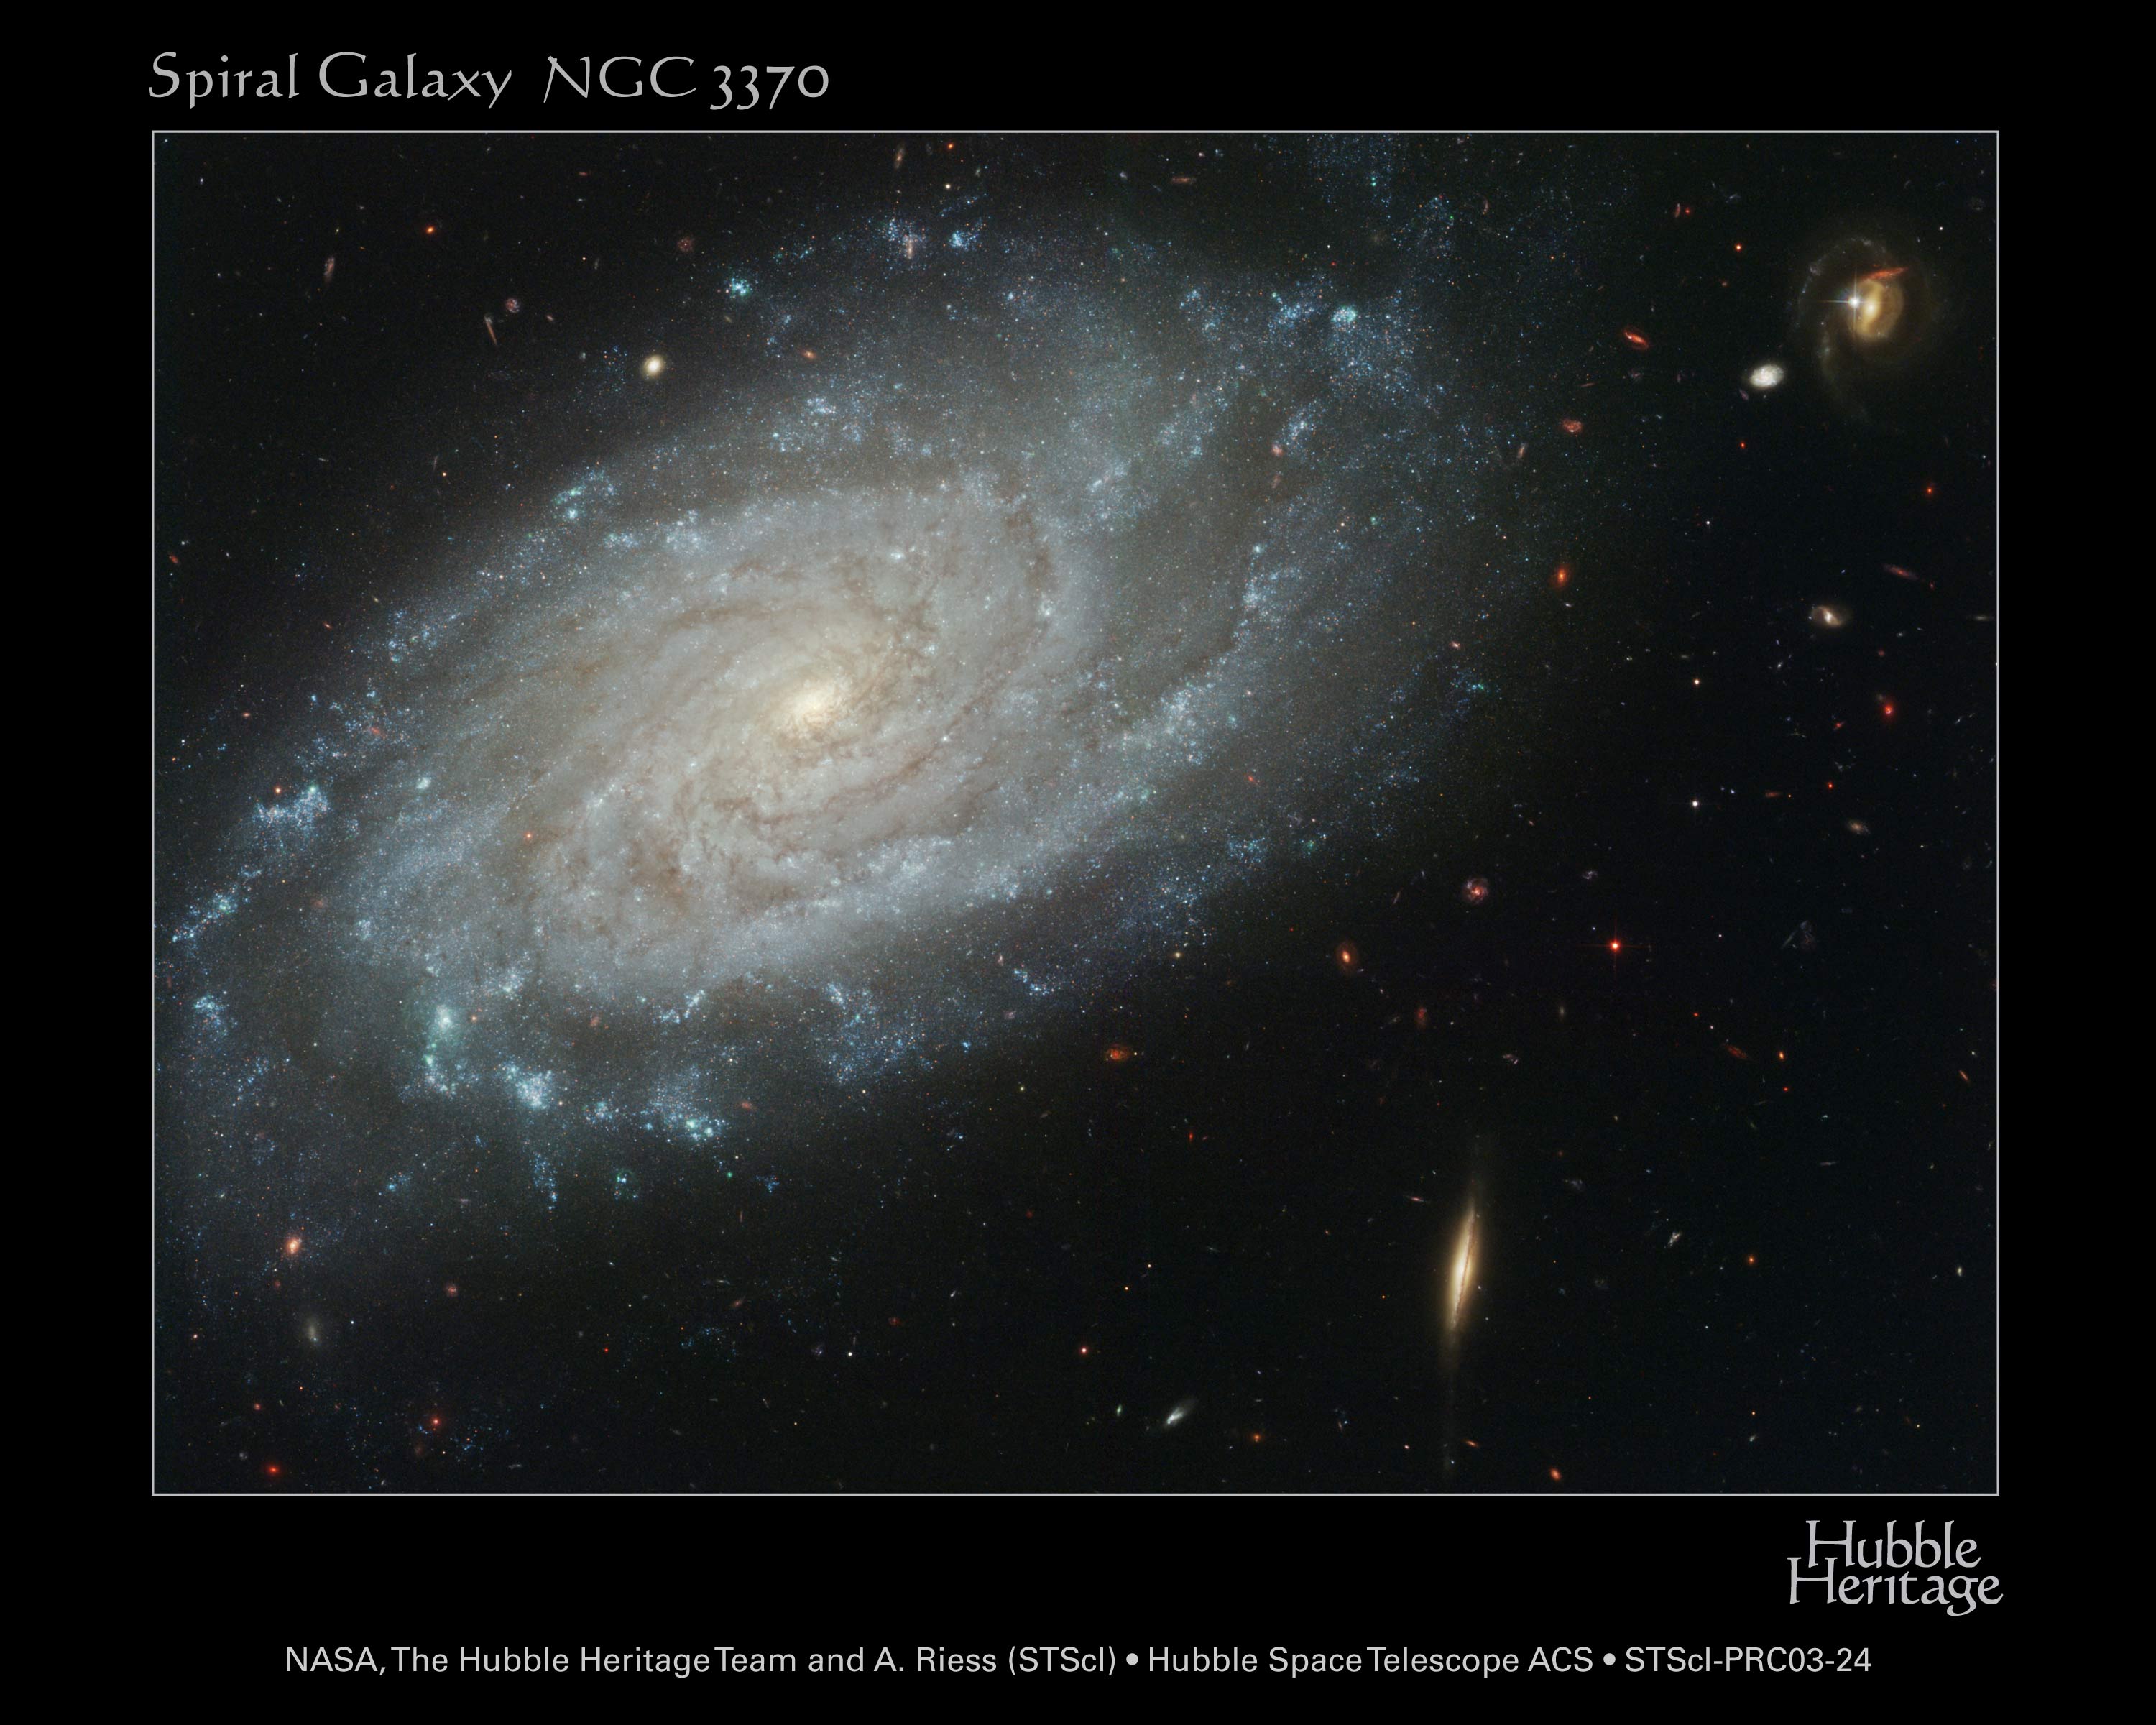 La galaxie spirale NGC 3370 vue par Hubble